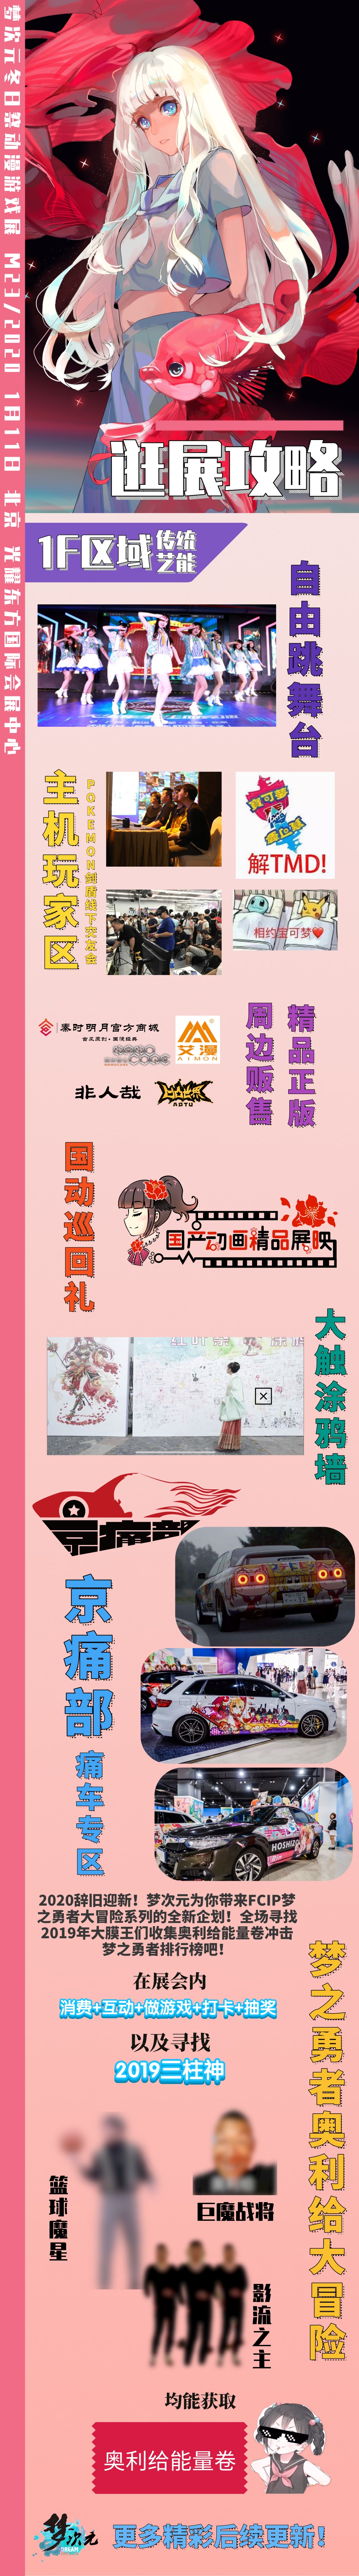 2020年1月11日北京M23梦次元冬日祭动漫游戏展